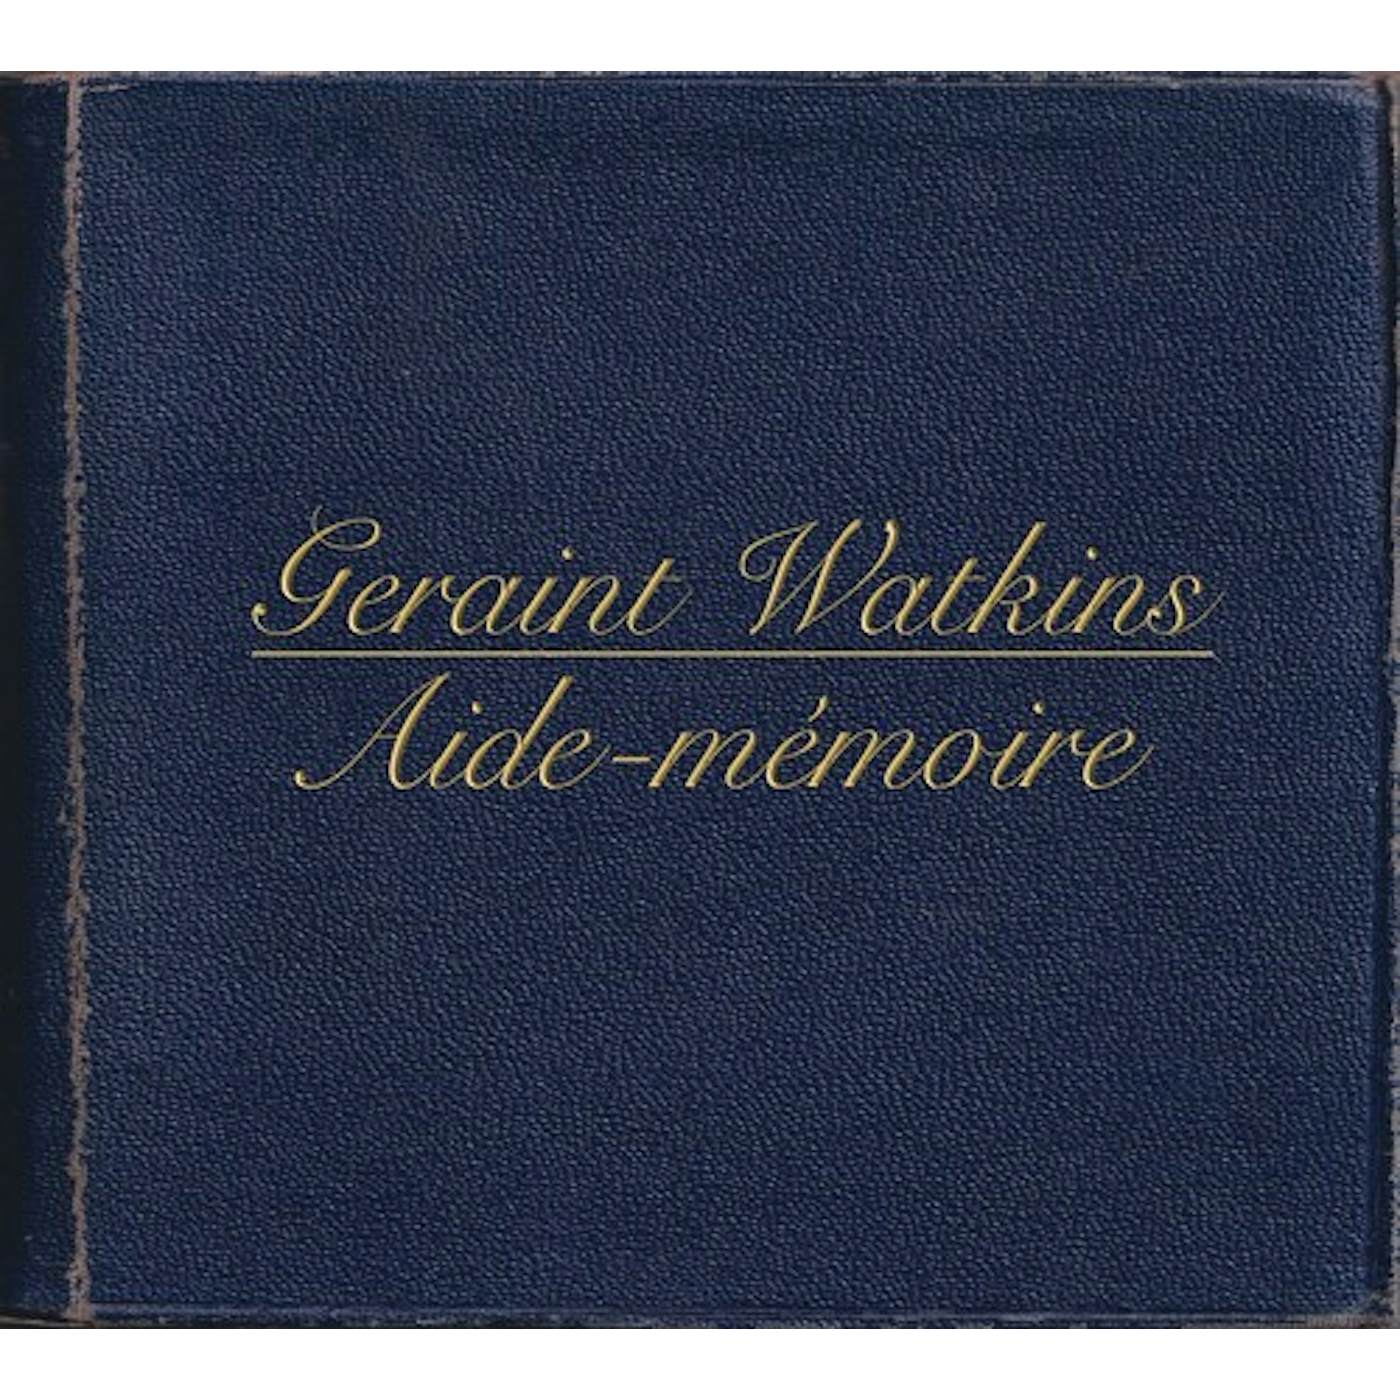 Geraint Watkins AIDE-MEMOIRE CD